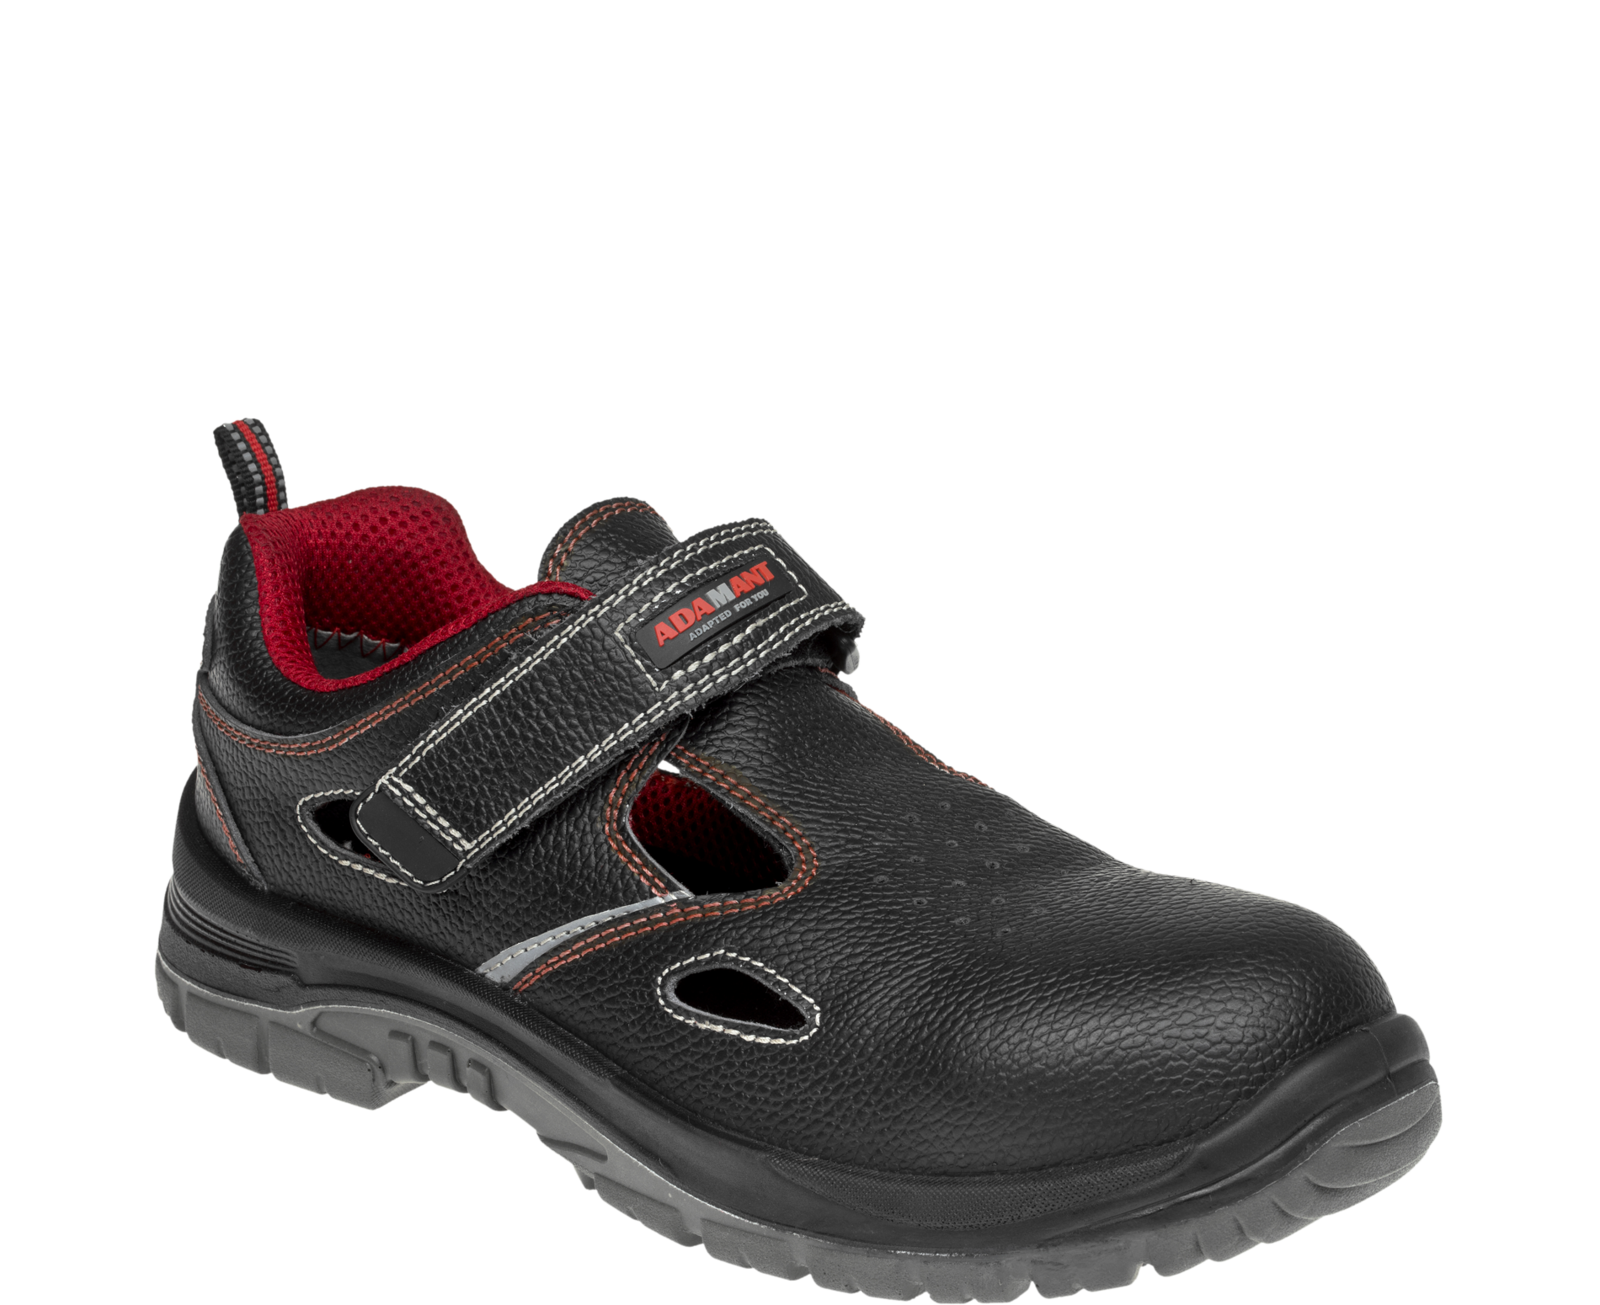 Bezpečnostné sandále Adamant Non Metallic S1 SRC - veľkosť: 36, farba: čierna/červená